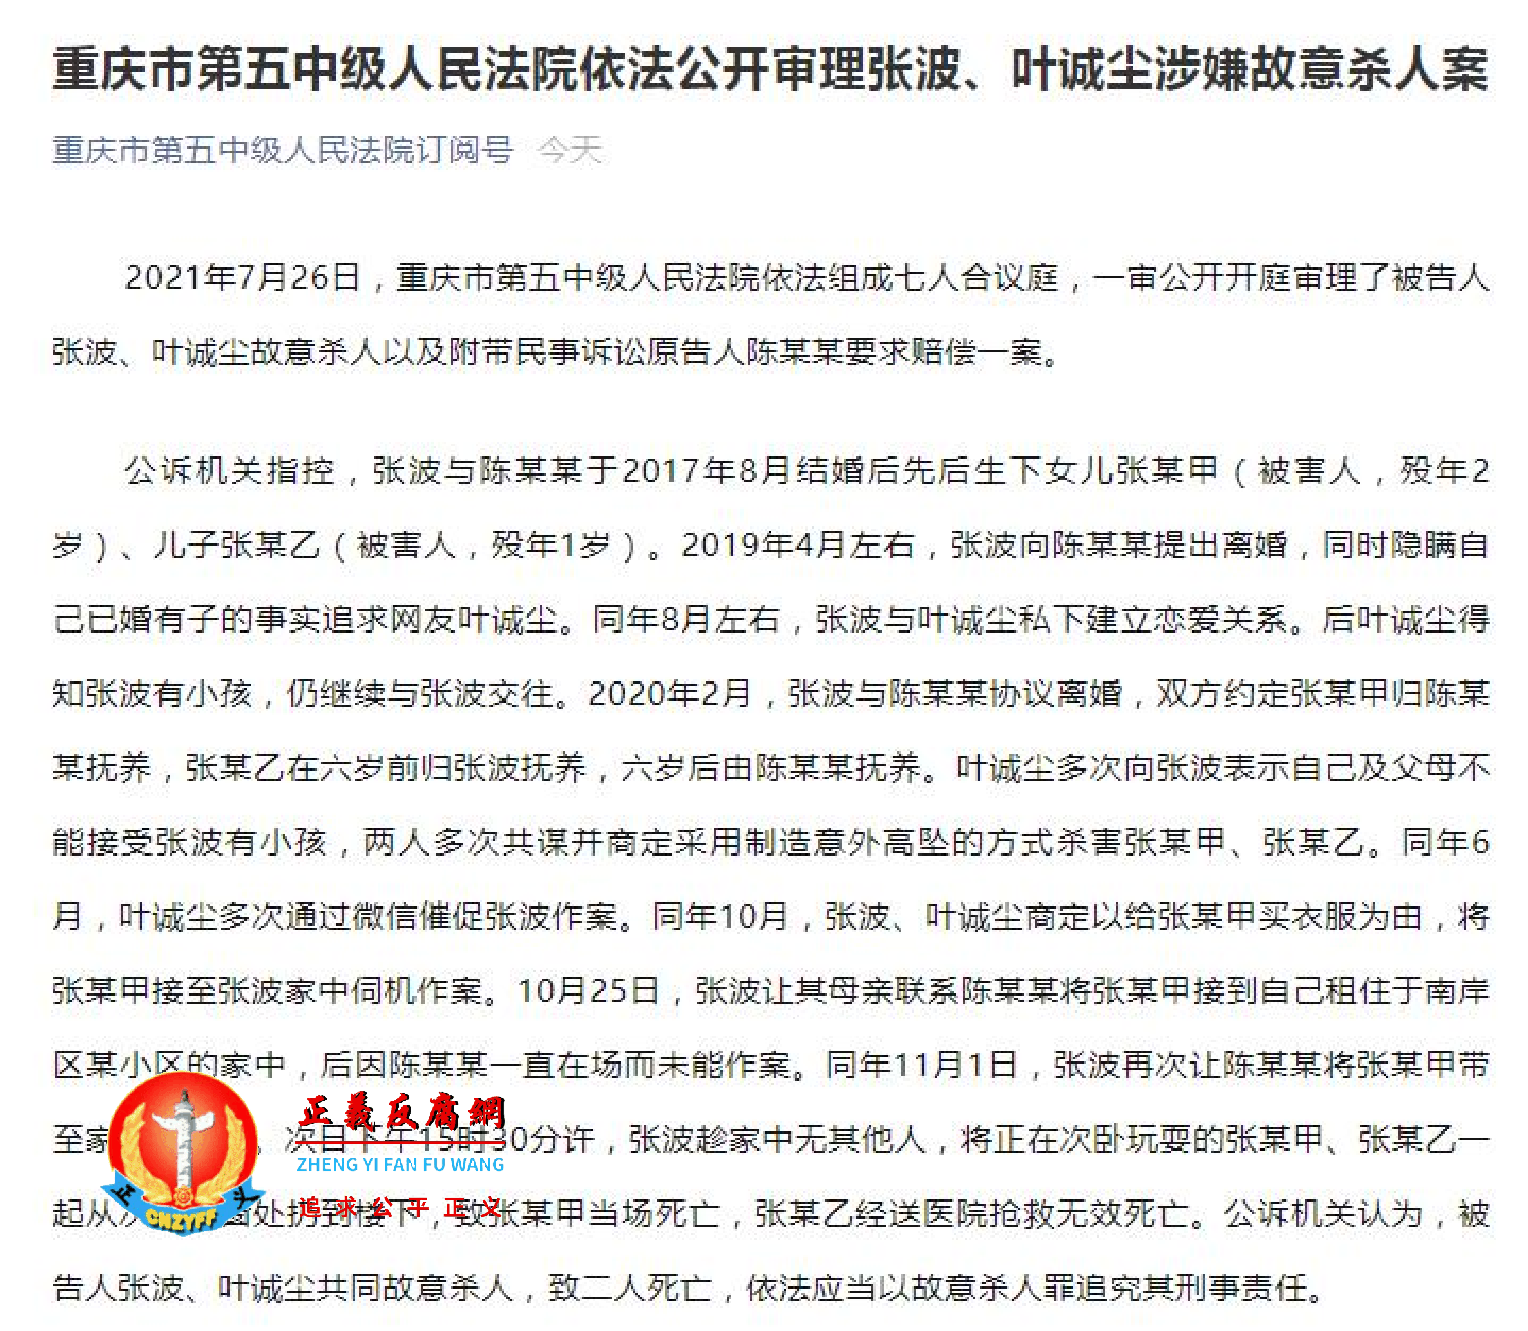 重庆市第五中级人民法院依法公开审理被告人张波、叶诚尘涉嫌故意杀人案.png